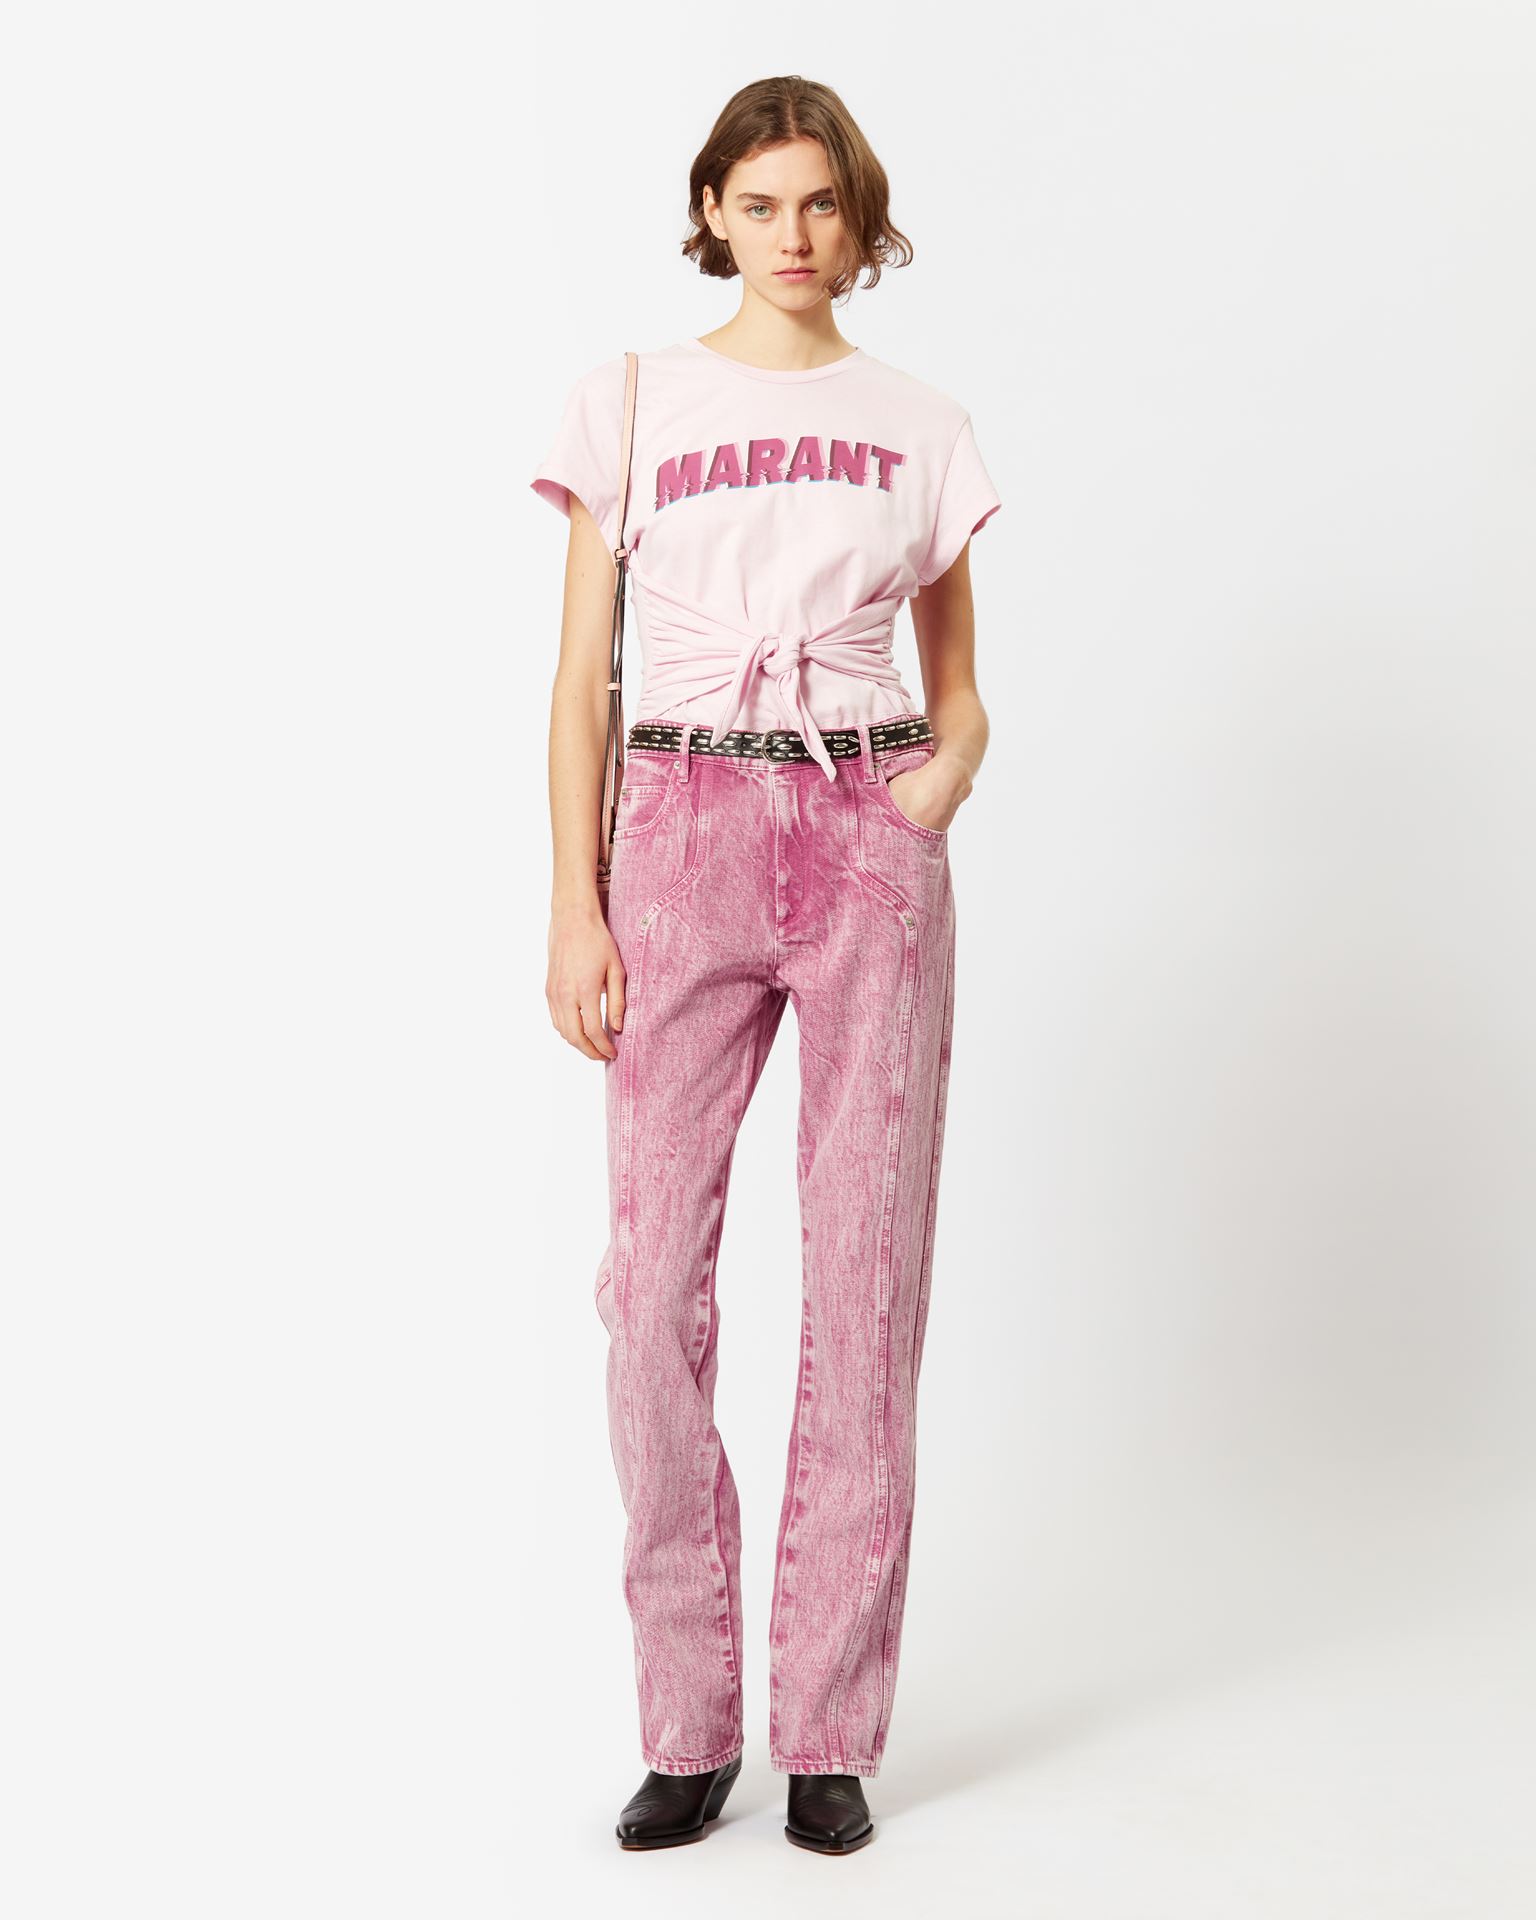 Isabel Marant Marant Étoile, Zodya Cotton T-shirt - Women - Pink